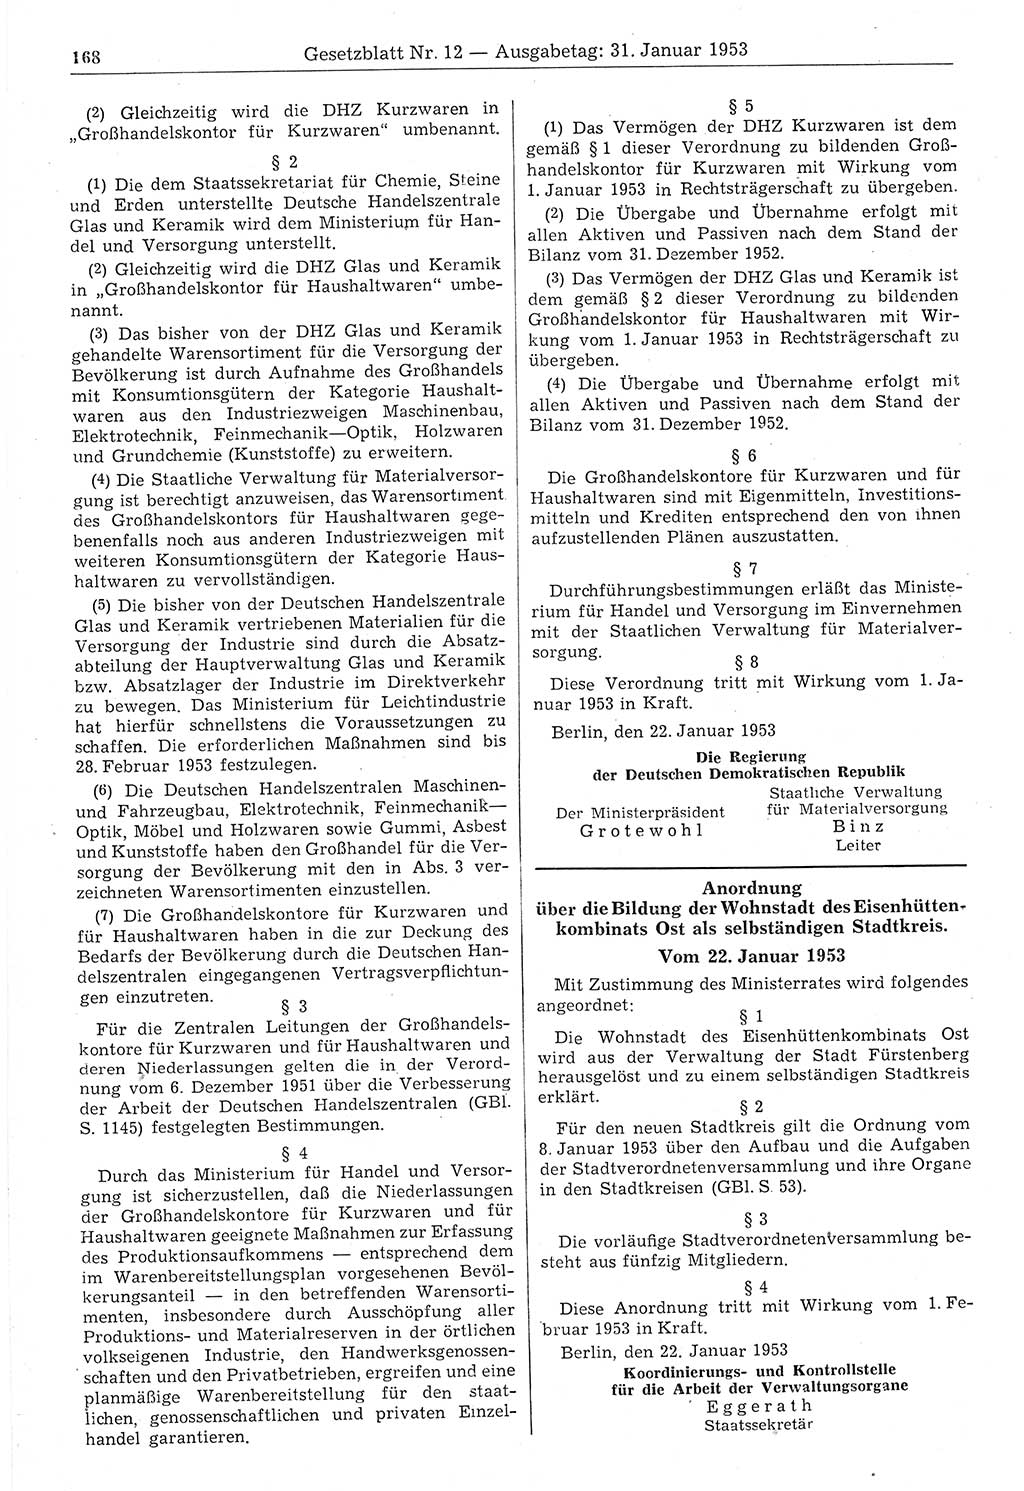 Gesetzblatt (GBl.) der Deutschen Demokratischen Republik (DDR) 1953, Seite 168 (GBl. DDR 1953, S. 168)